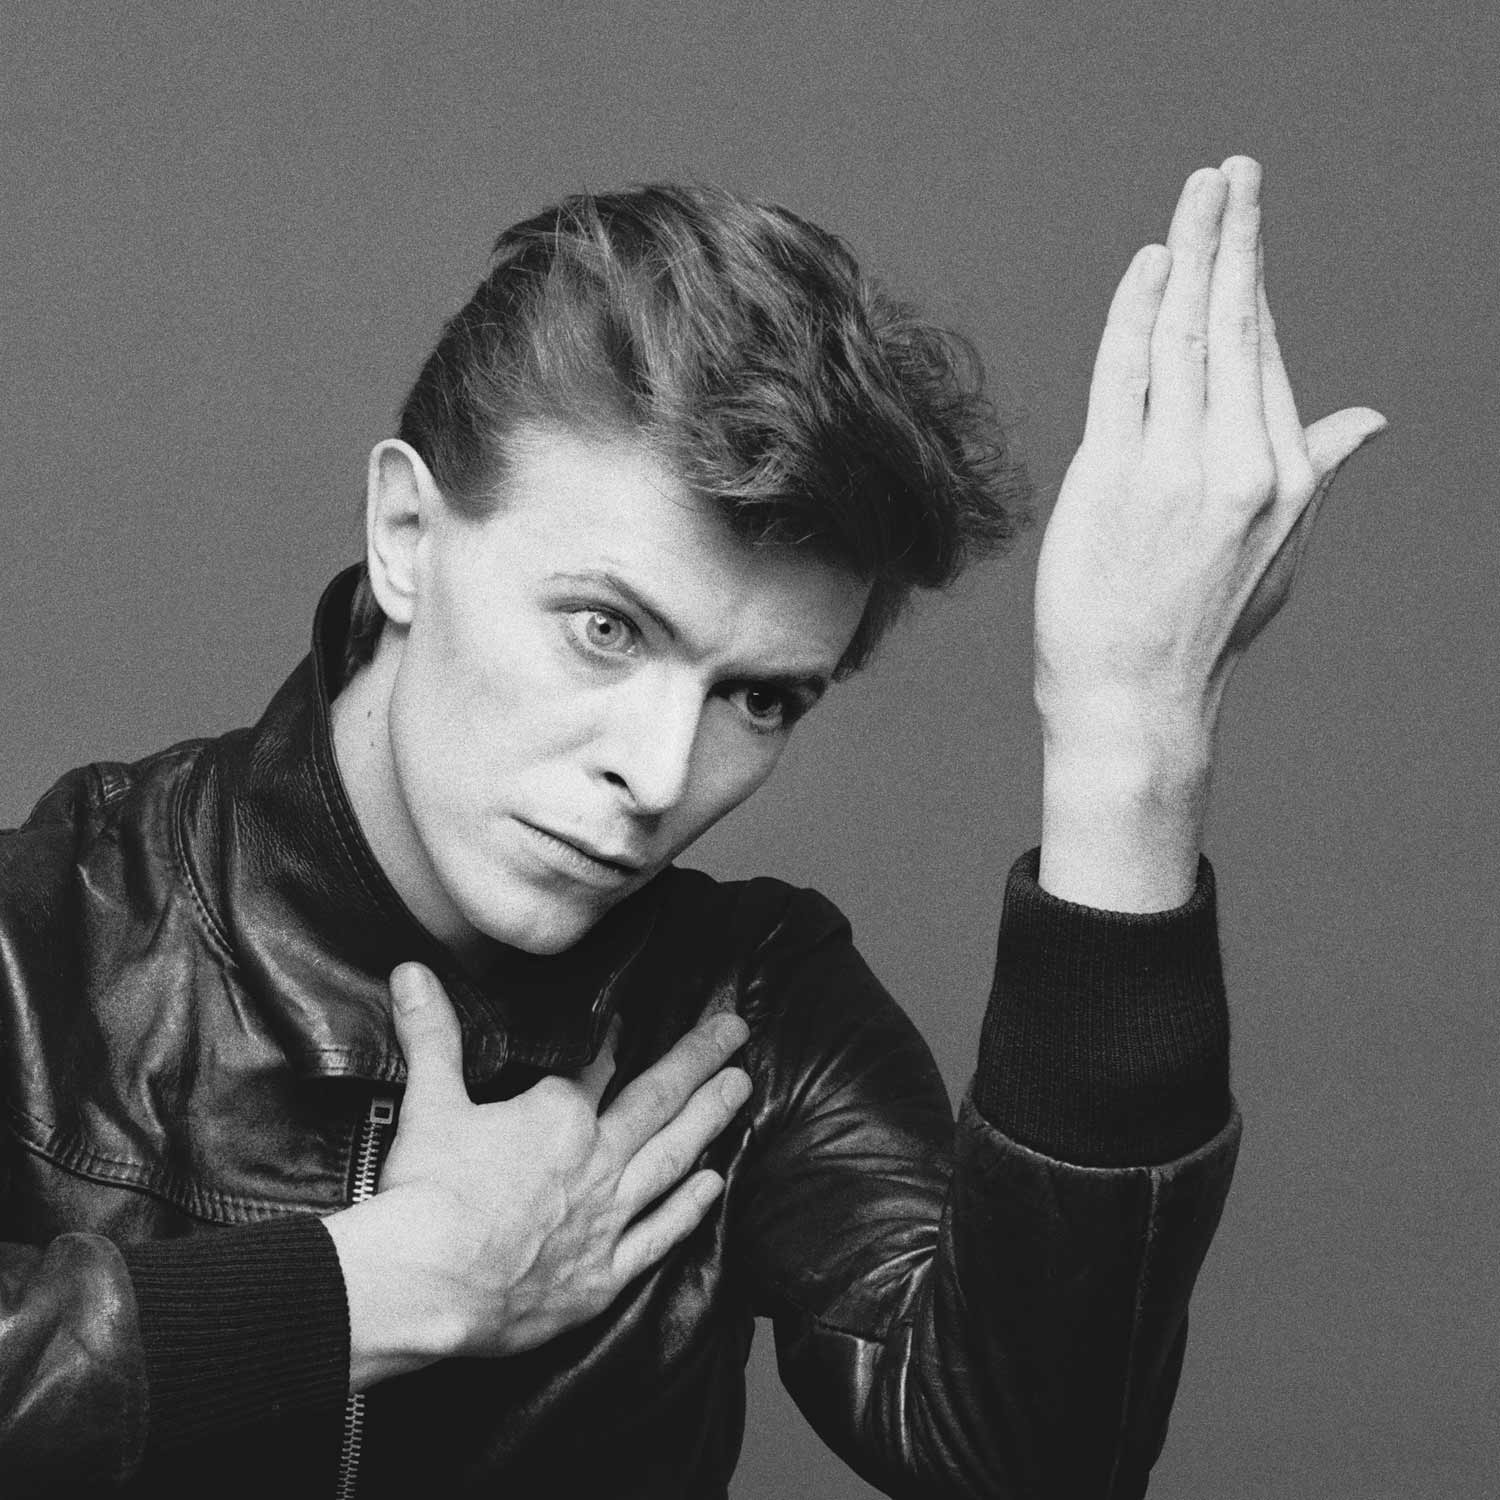 Le rinden honor a David Bowie en Berlín con una placa